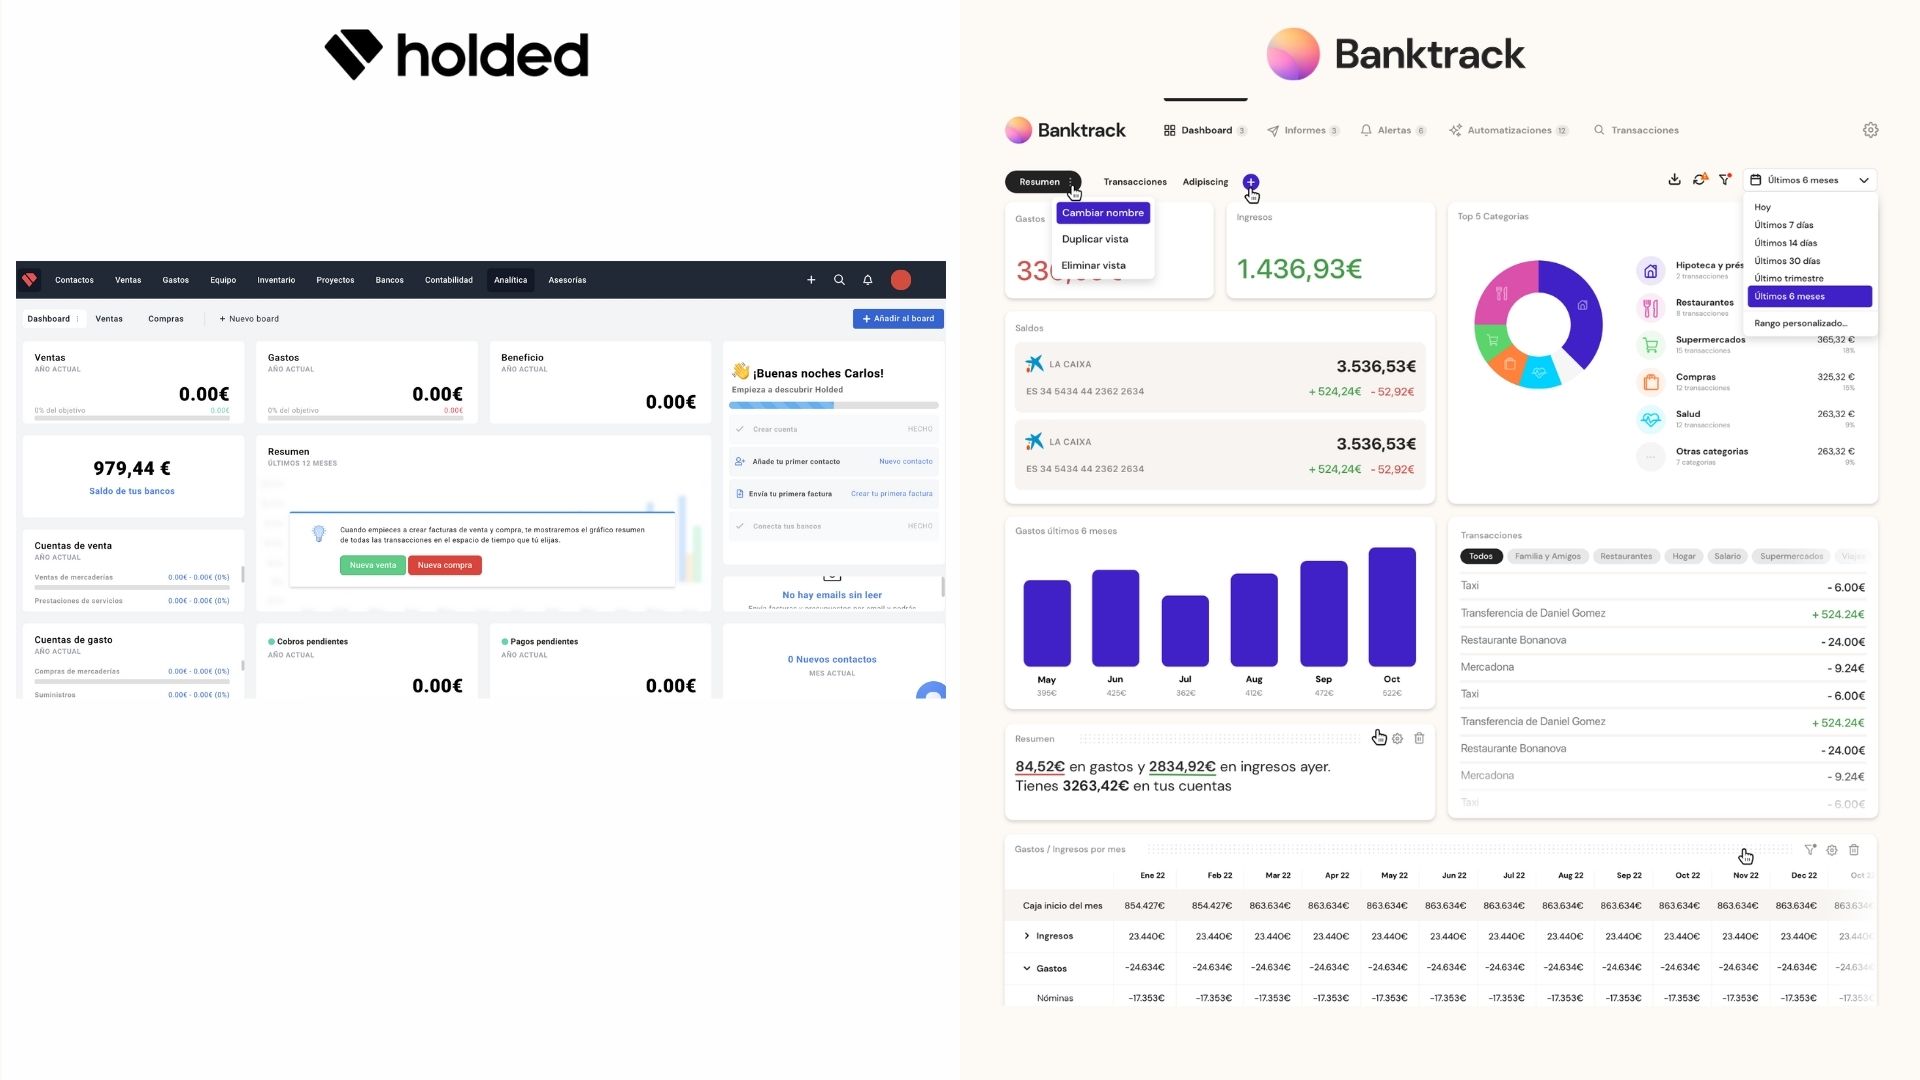 Comparación entre Holded y la alternativa a Holded, que es Banktrack en este primer vistazo de las herramientas